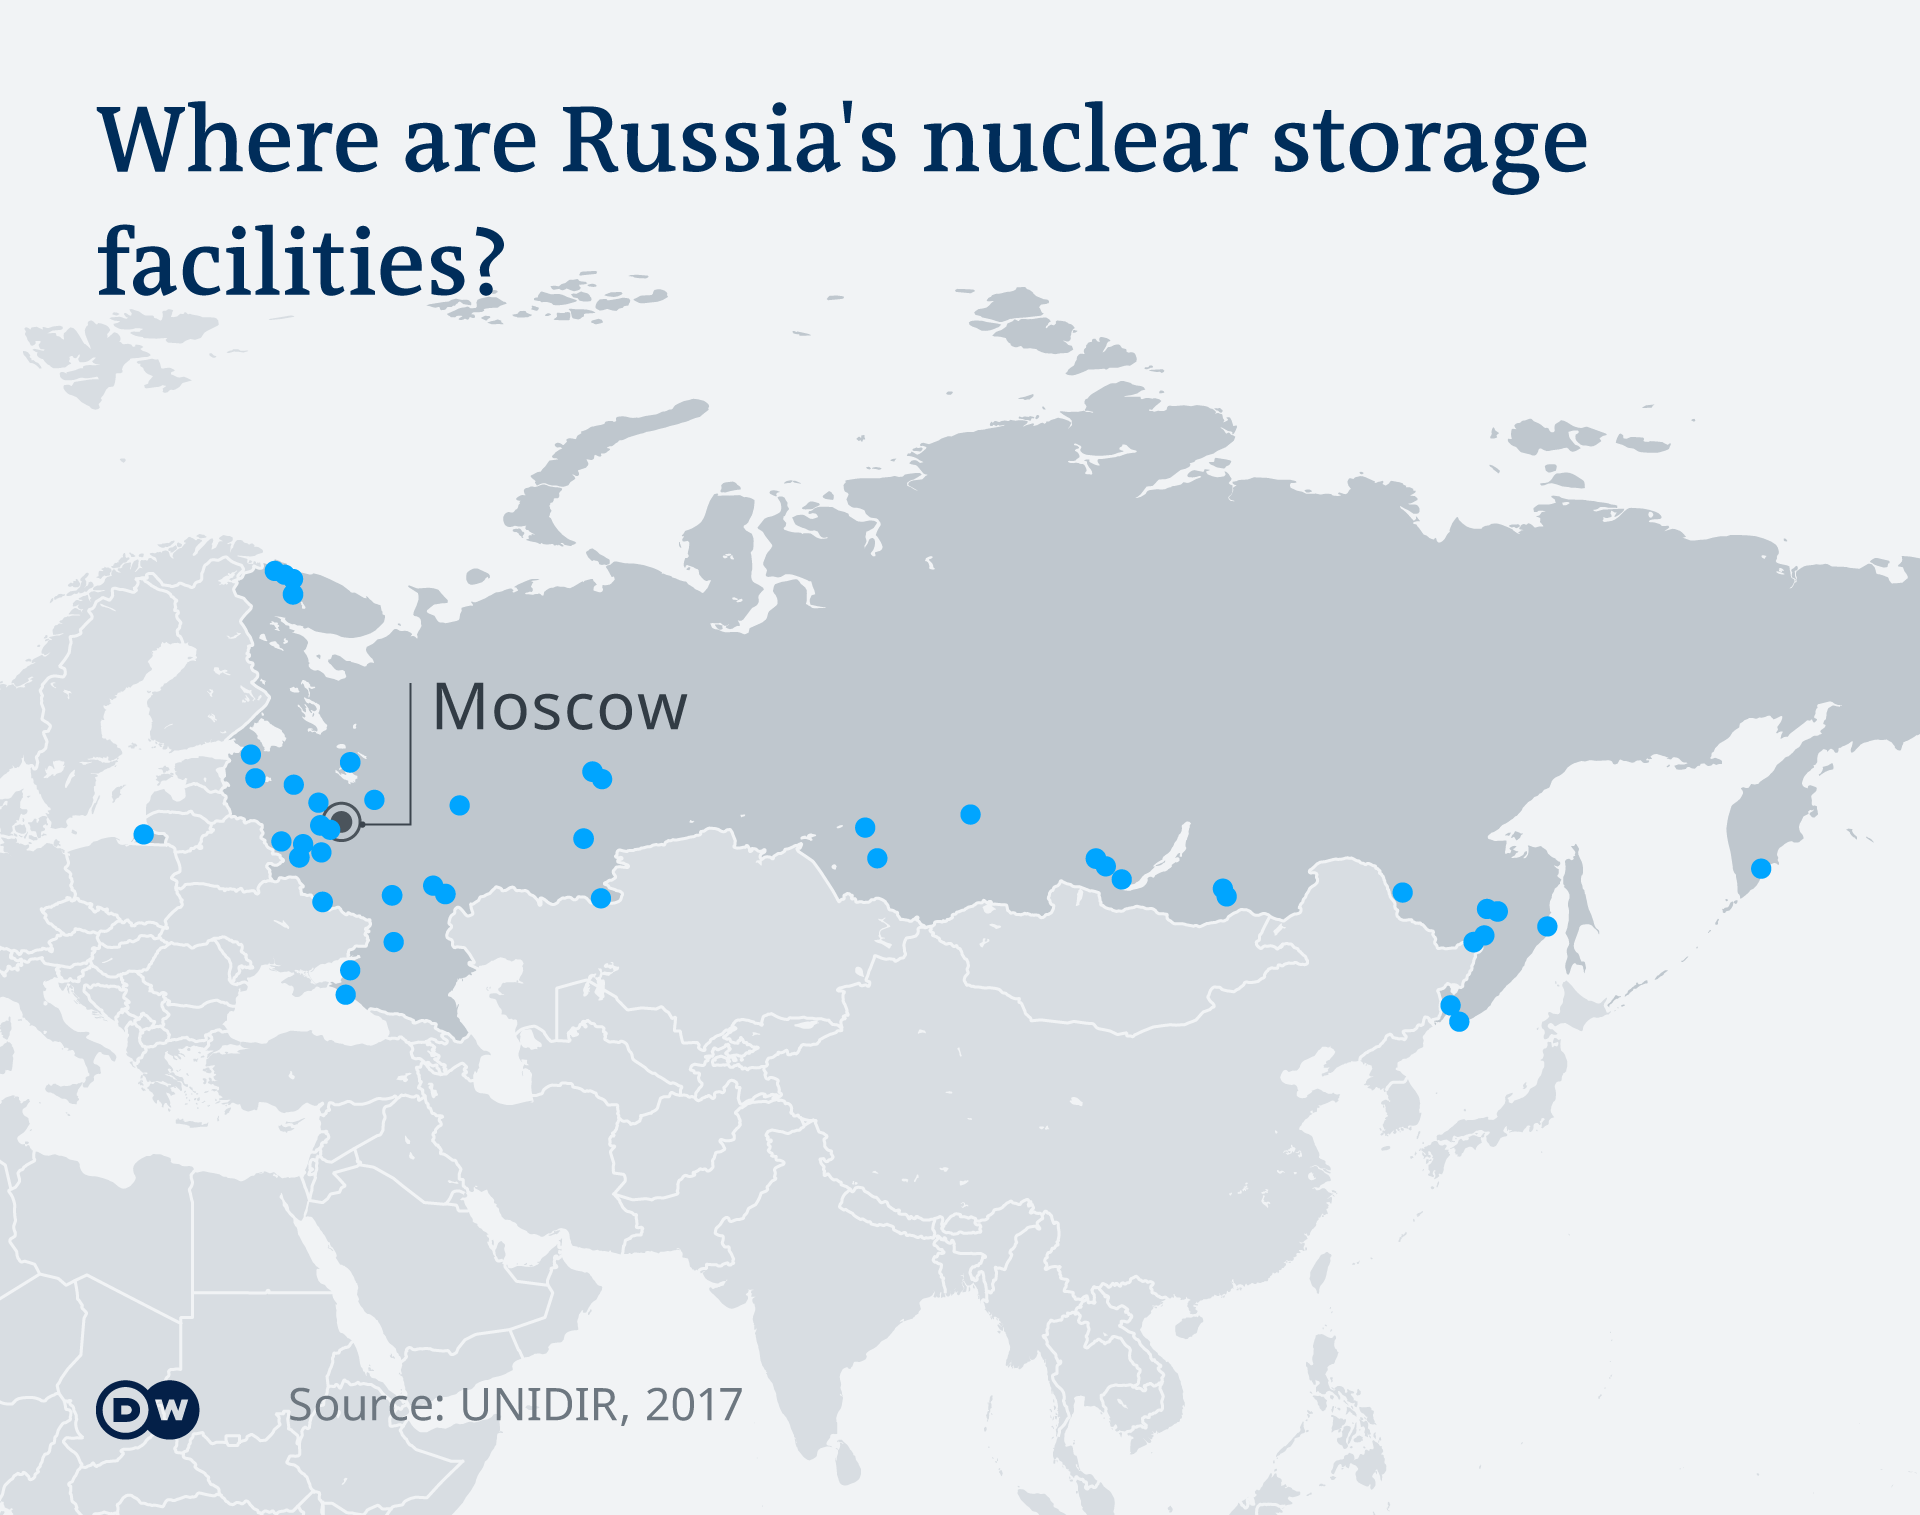  Със синьо са маркирани локациите на съветските нуклеарни бази 